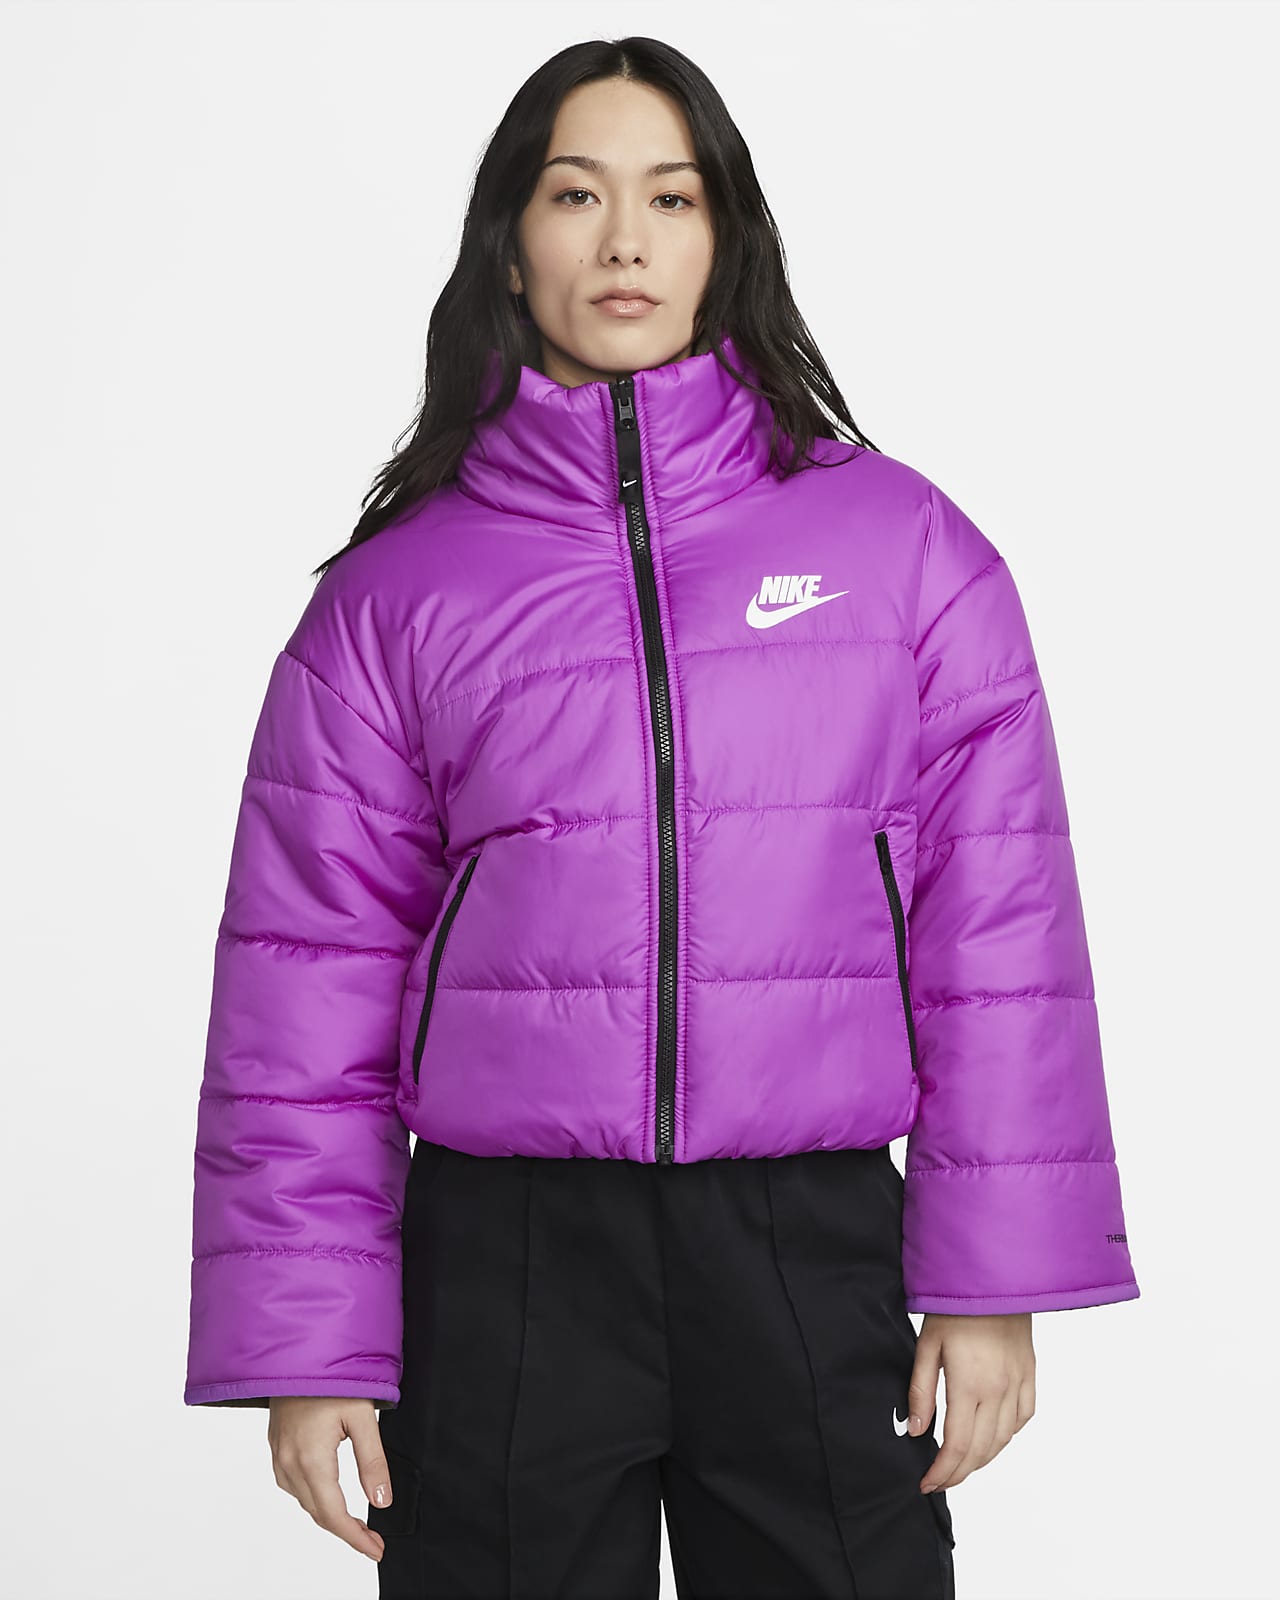 købmand brysomme Bering strædet Vendbar Nike Sportswear Therma-FIT Repel-jakke til kvinder. Nike DK